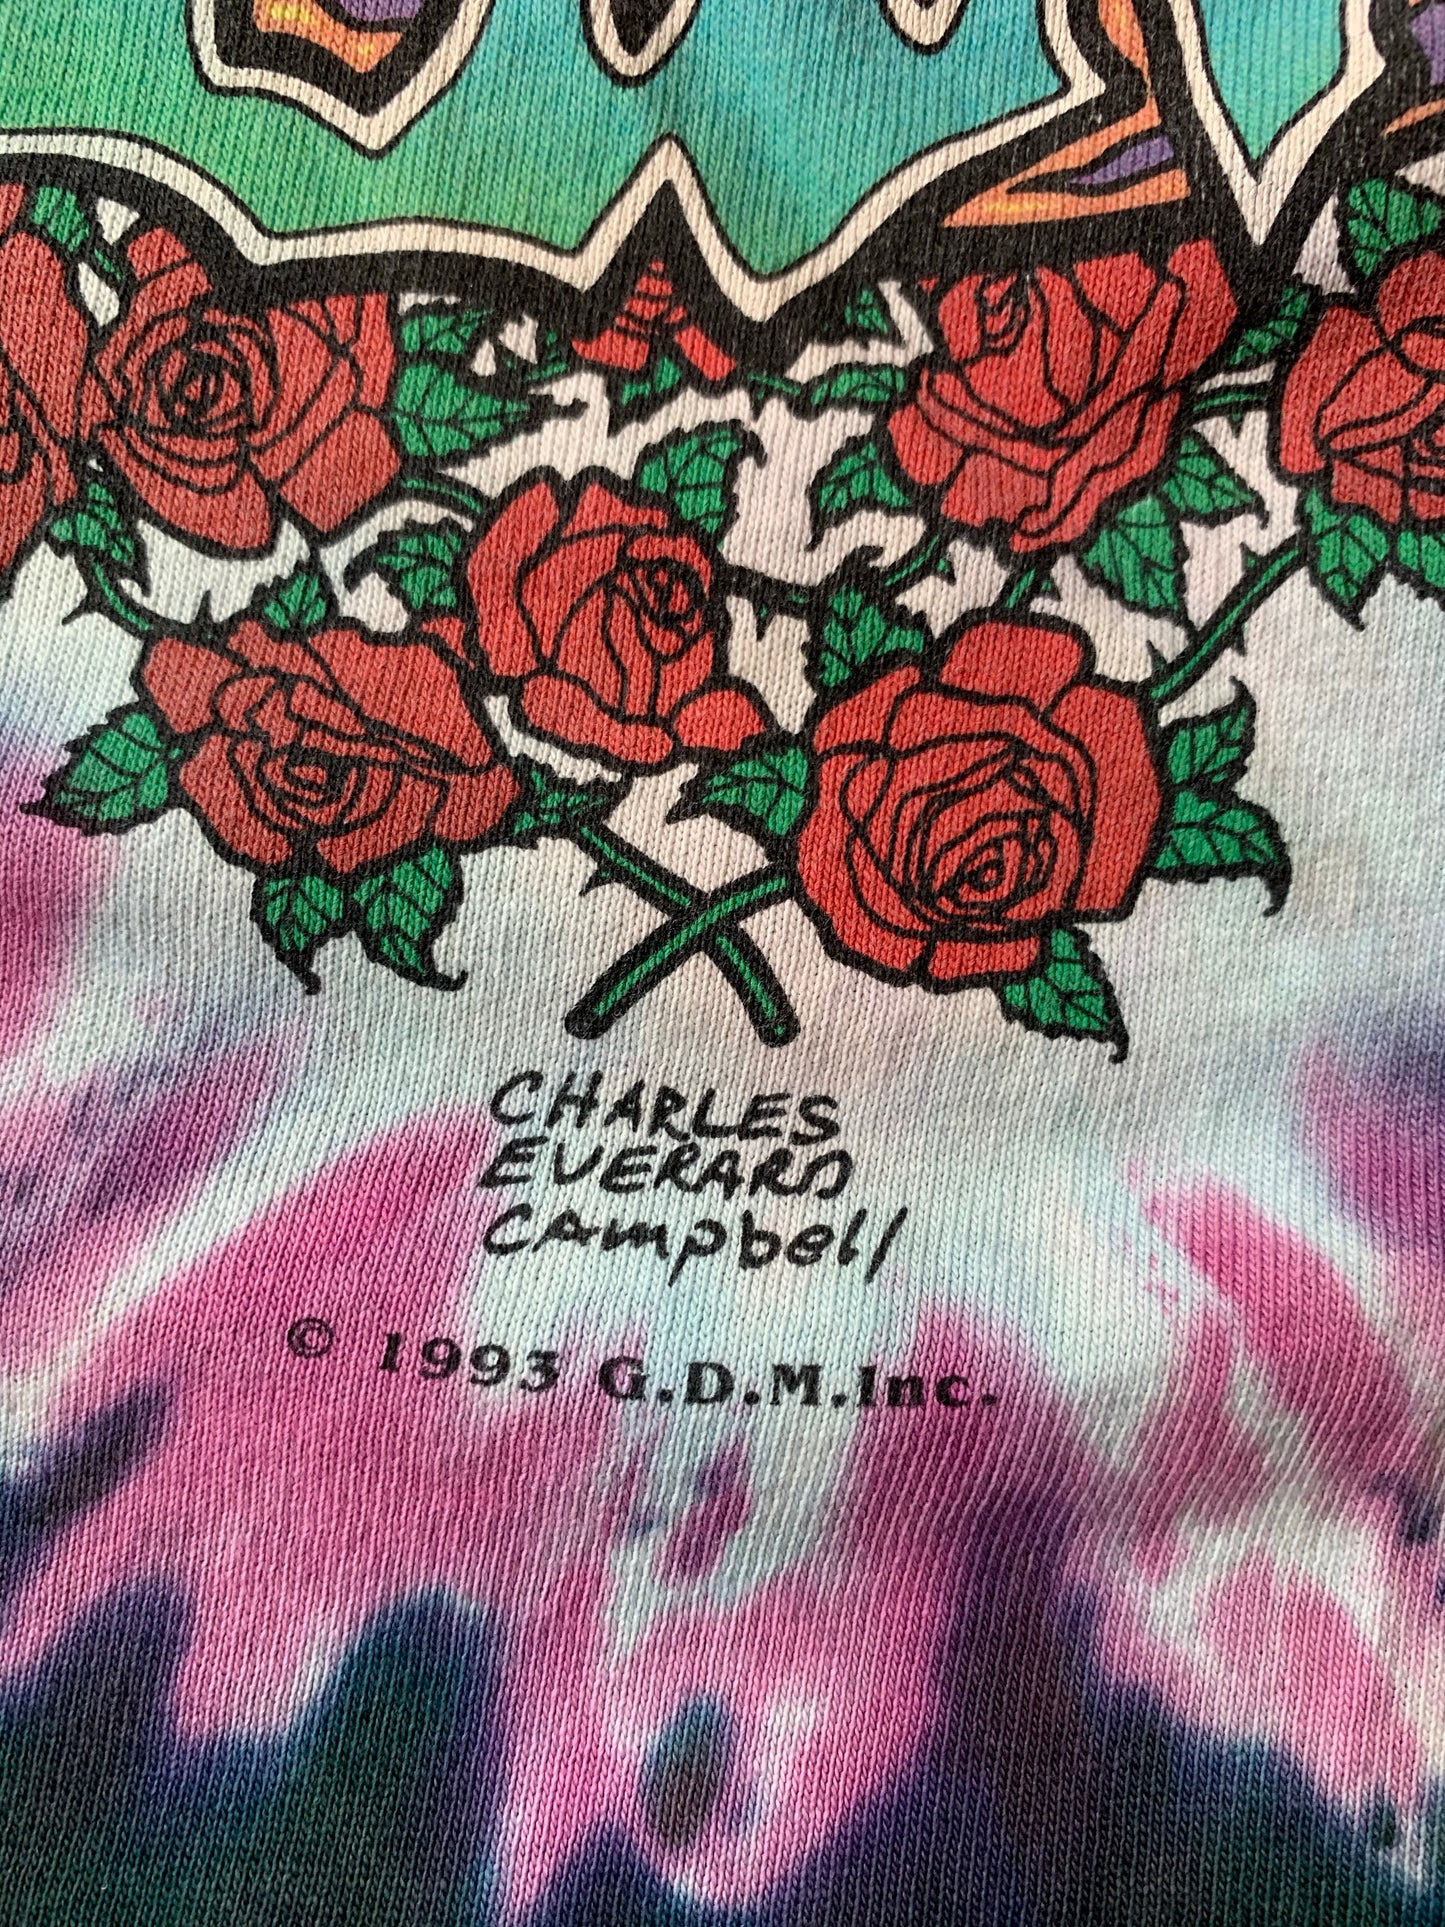 Vintage 1993 Grateful Dead Seasons Of The Dead The Endless Tour T-Shirt